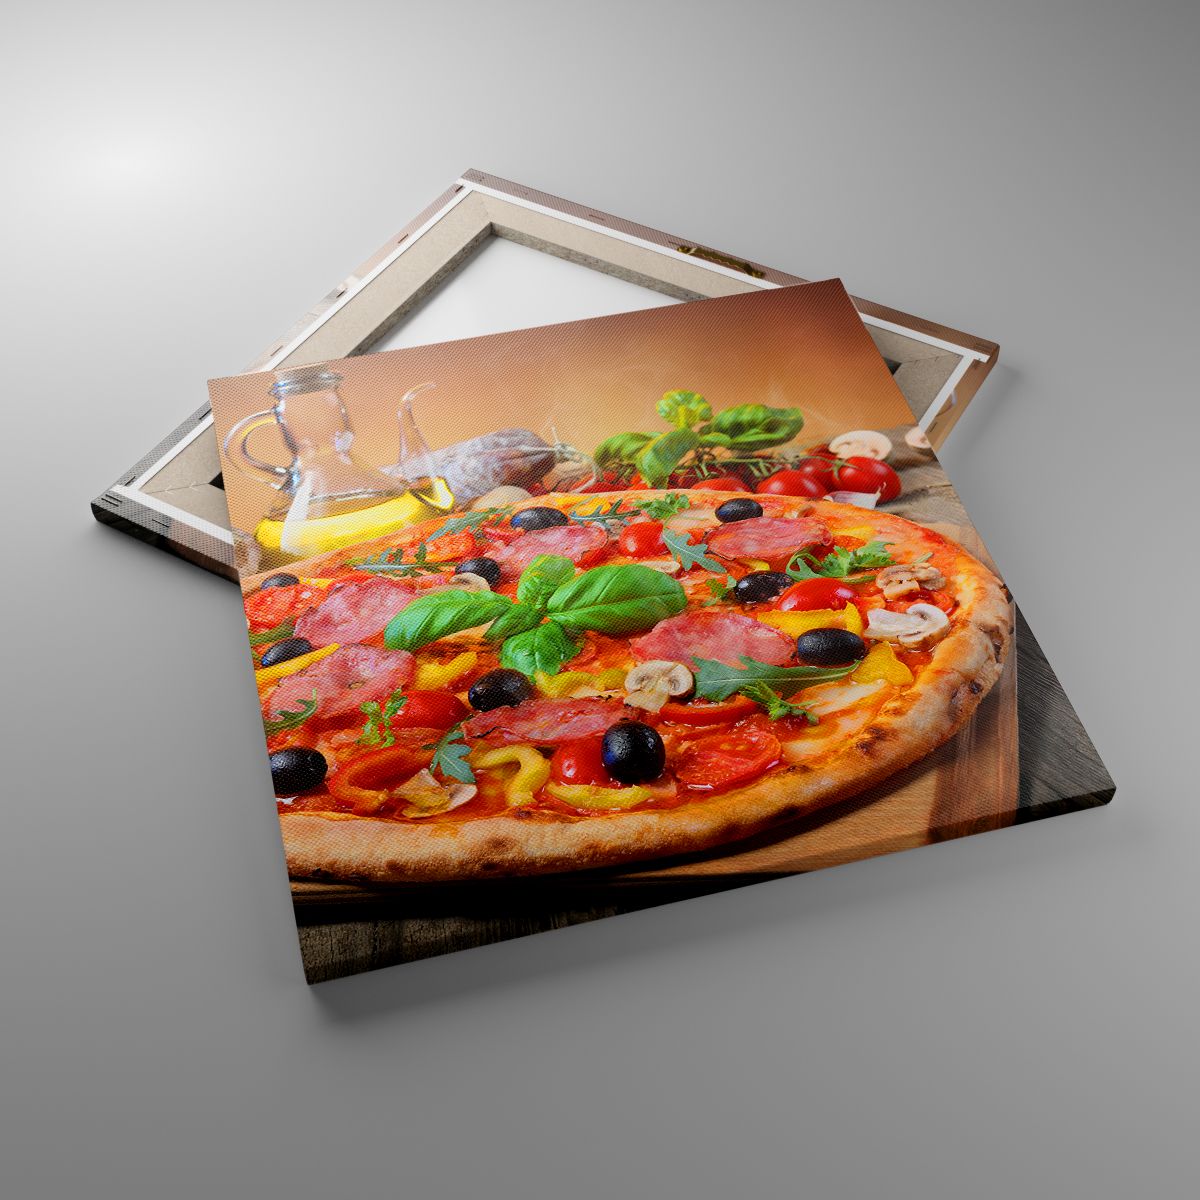 Impression La Gastronomie, Impression Pizza, Impression Italie, Impression Cuisine, Impression Pétrole